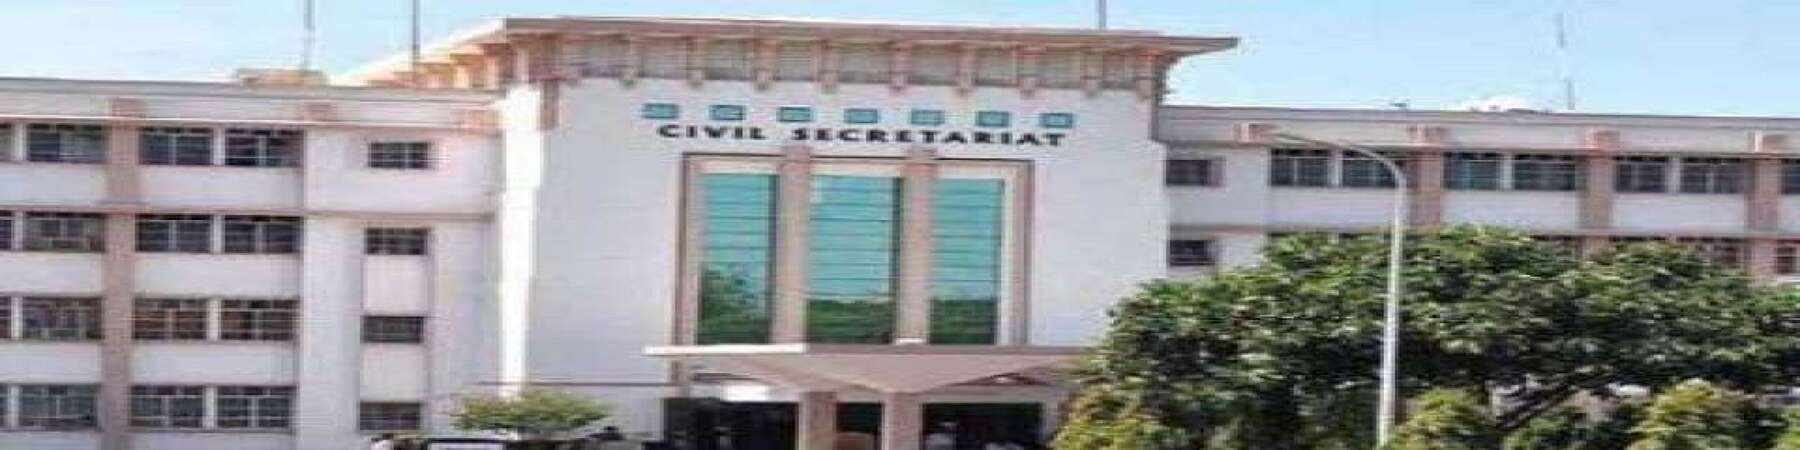 Civil Secretariat, Jammu